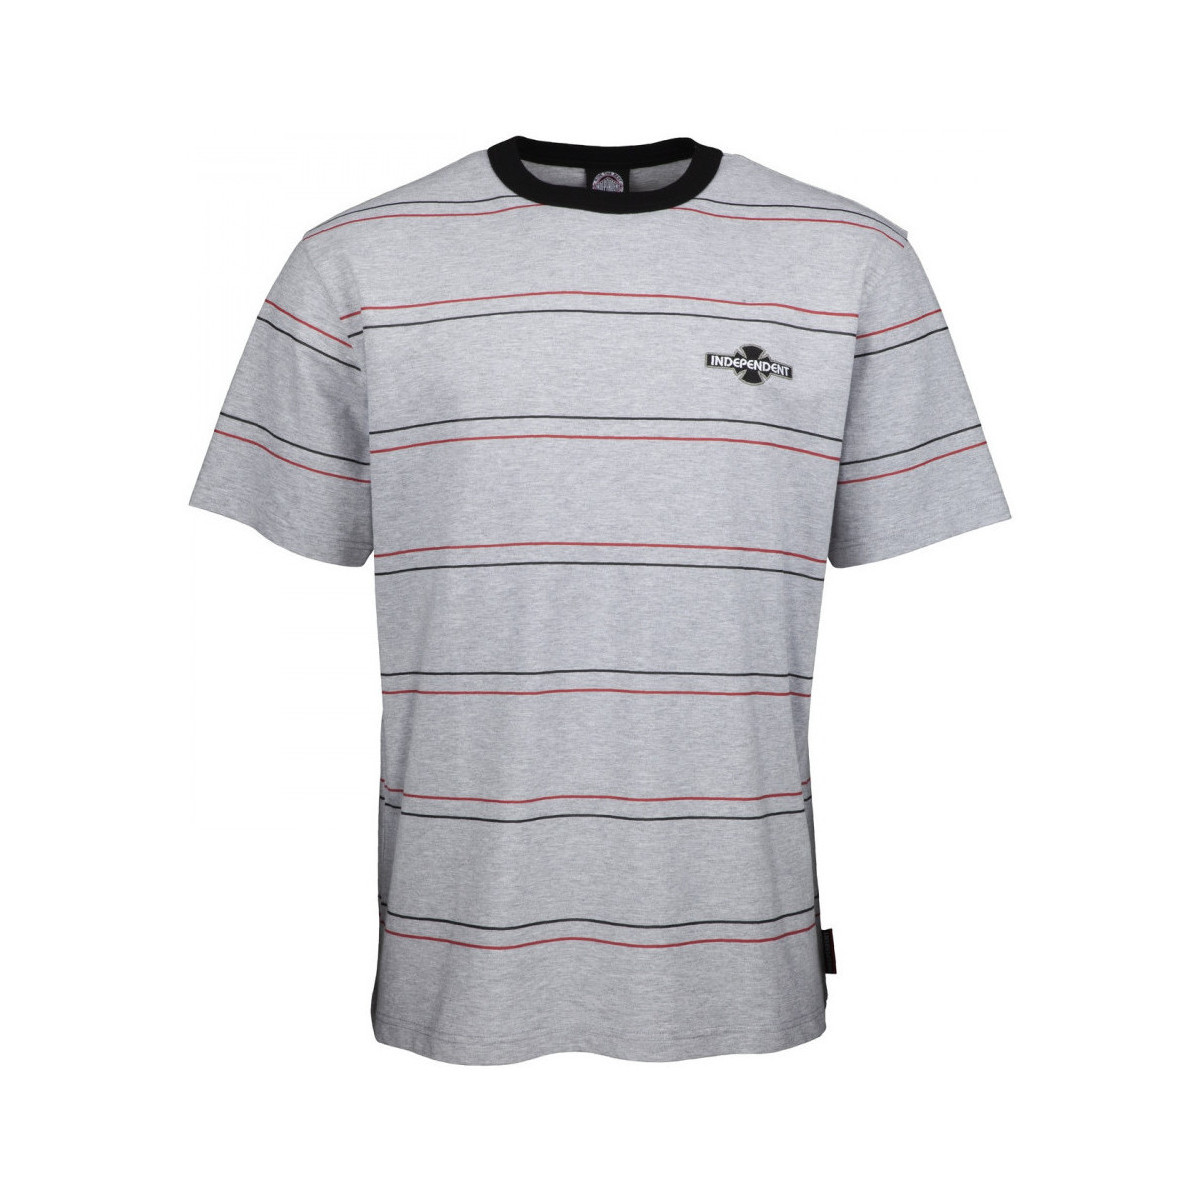 Odjeća Muškarci
 Majice / Polo majice Independent O.g.b.c standard tee Siva